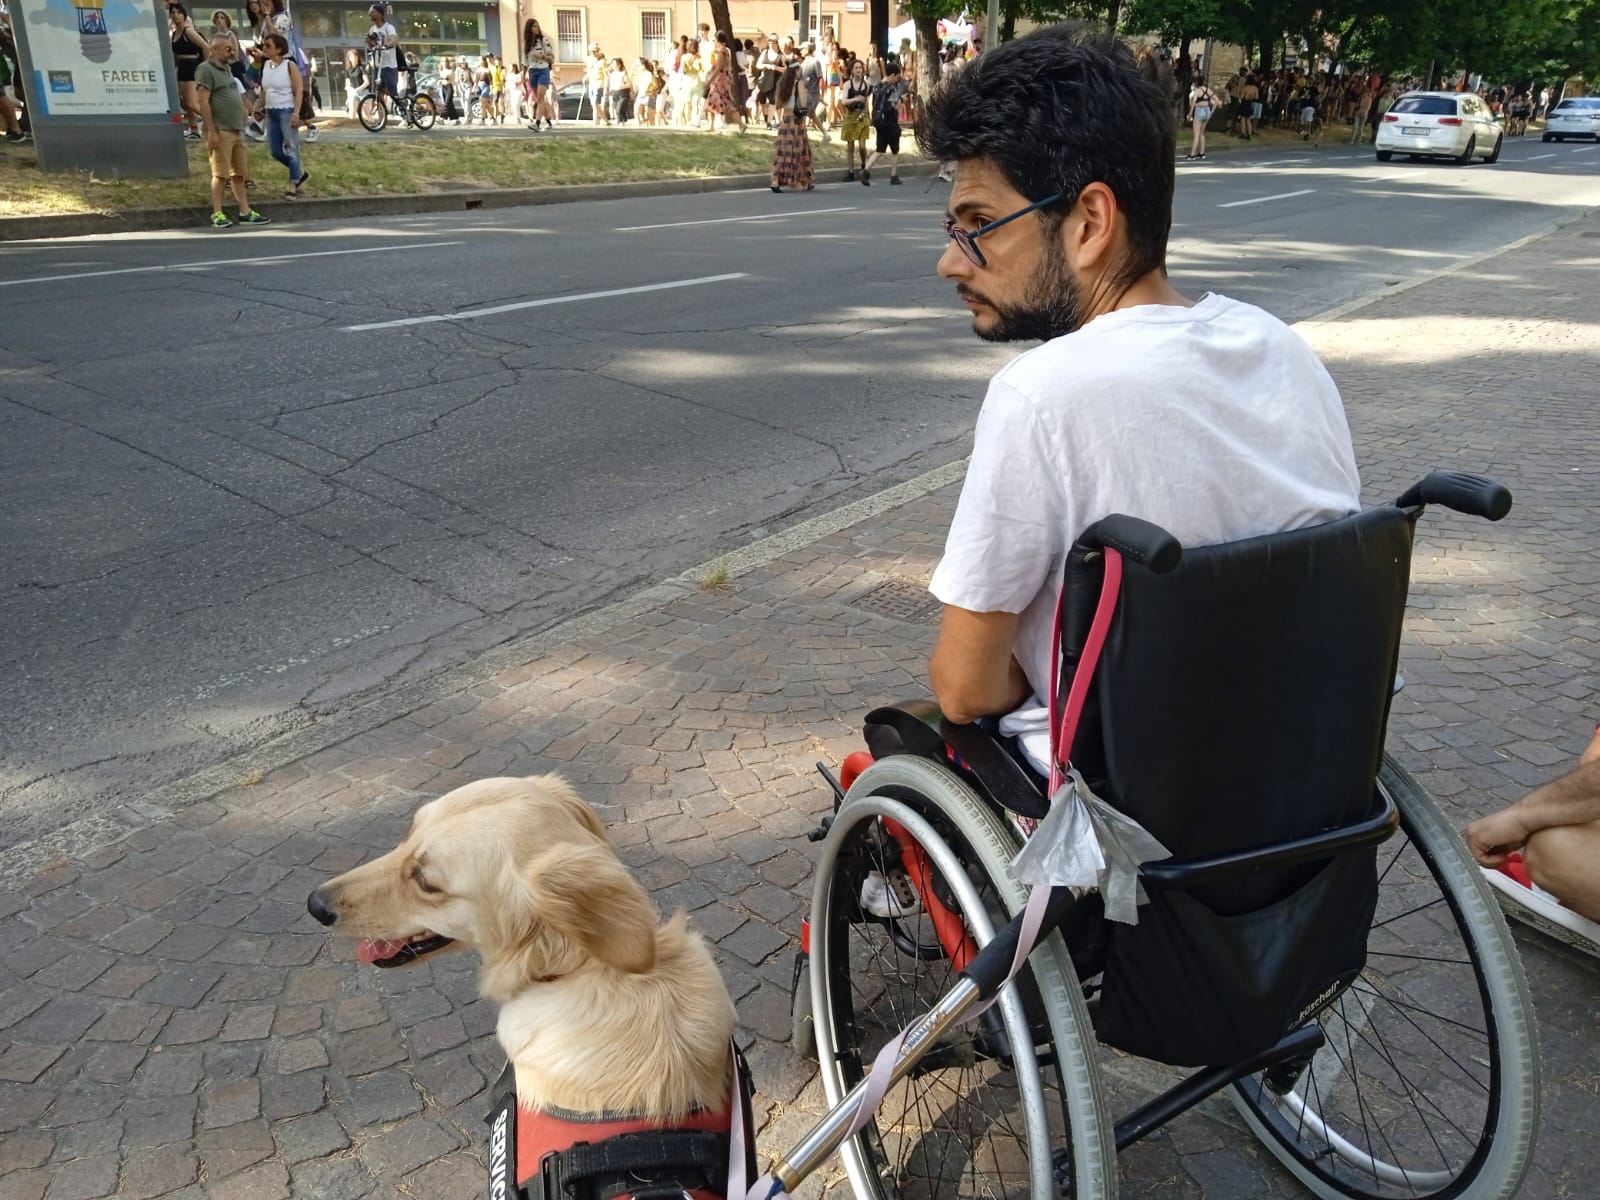 Preparazione cani da supporto a disabili a bologna, emilia romagna